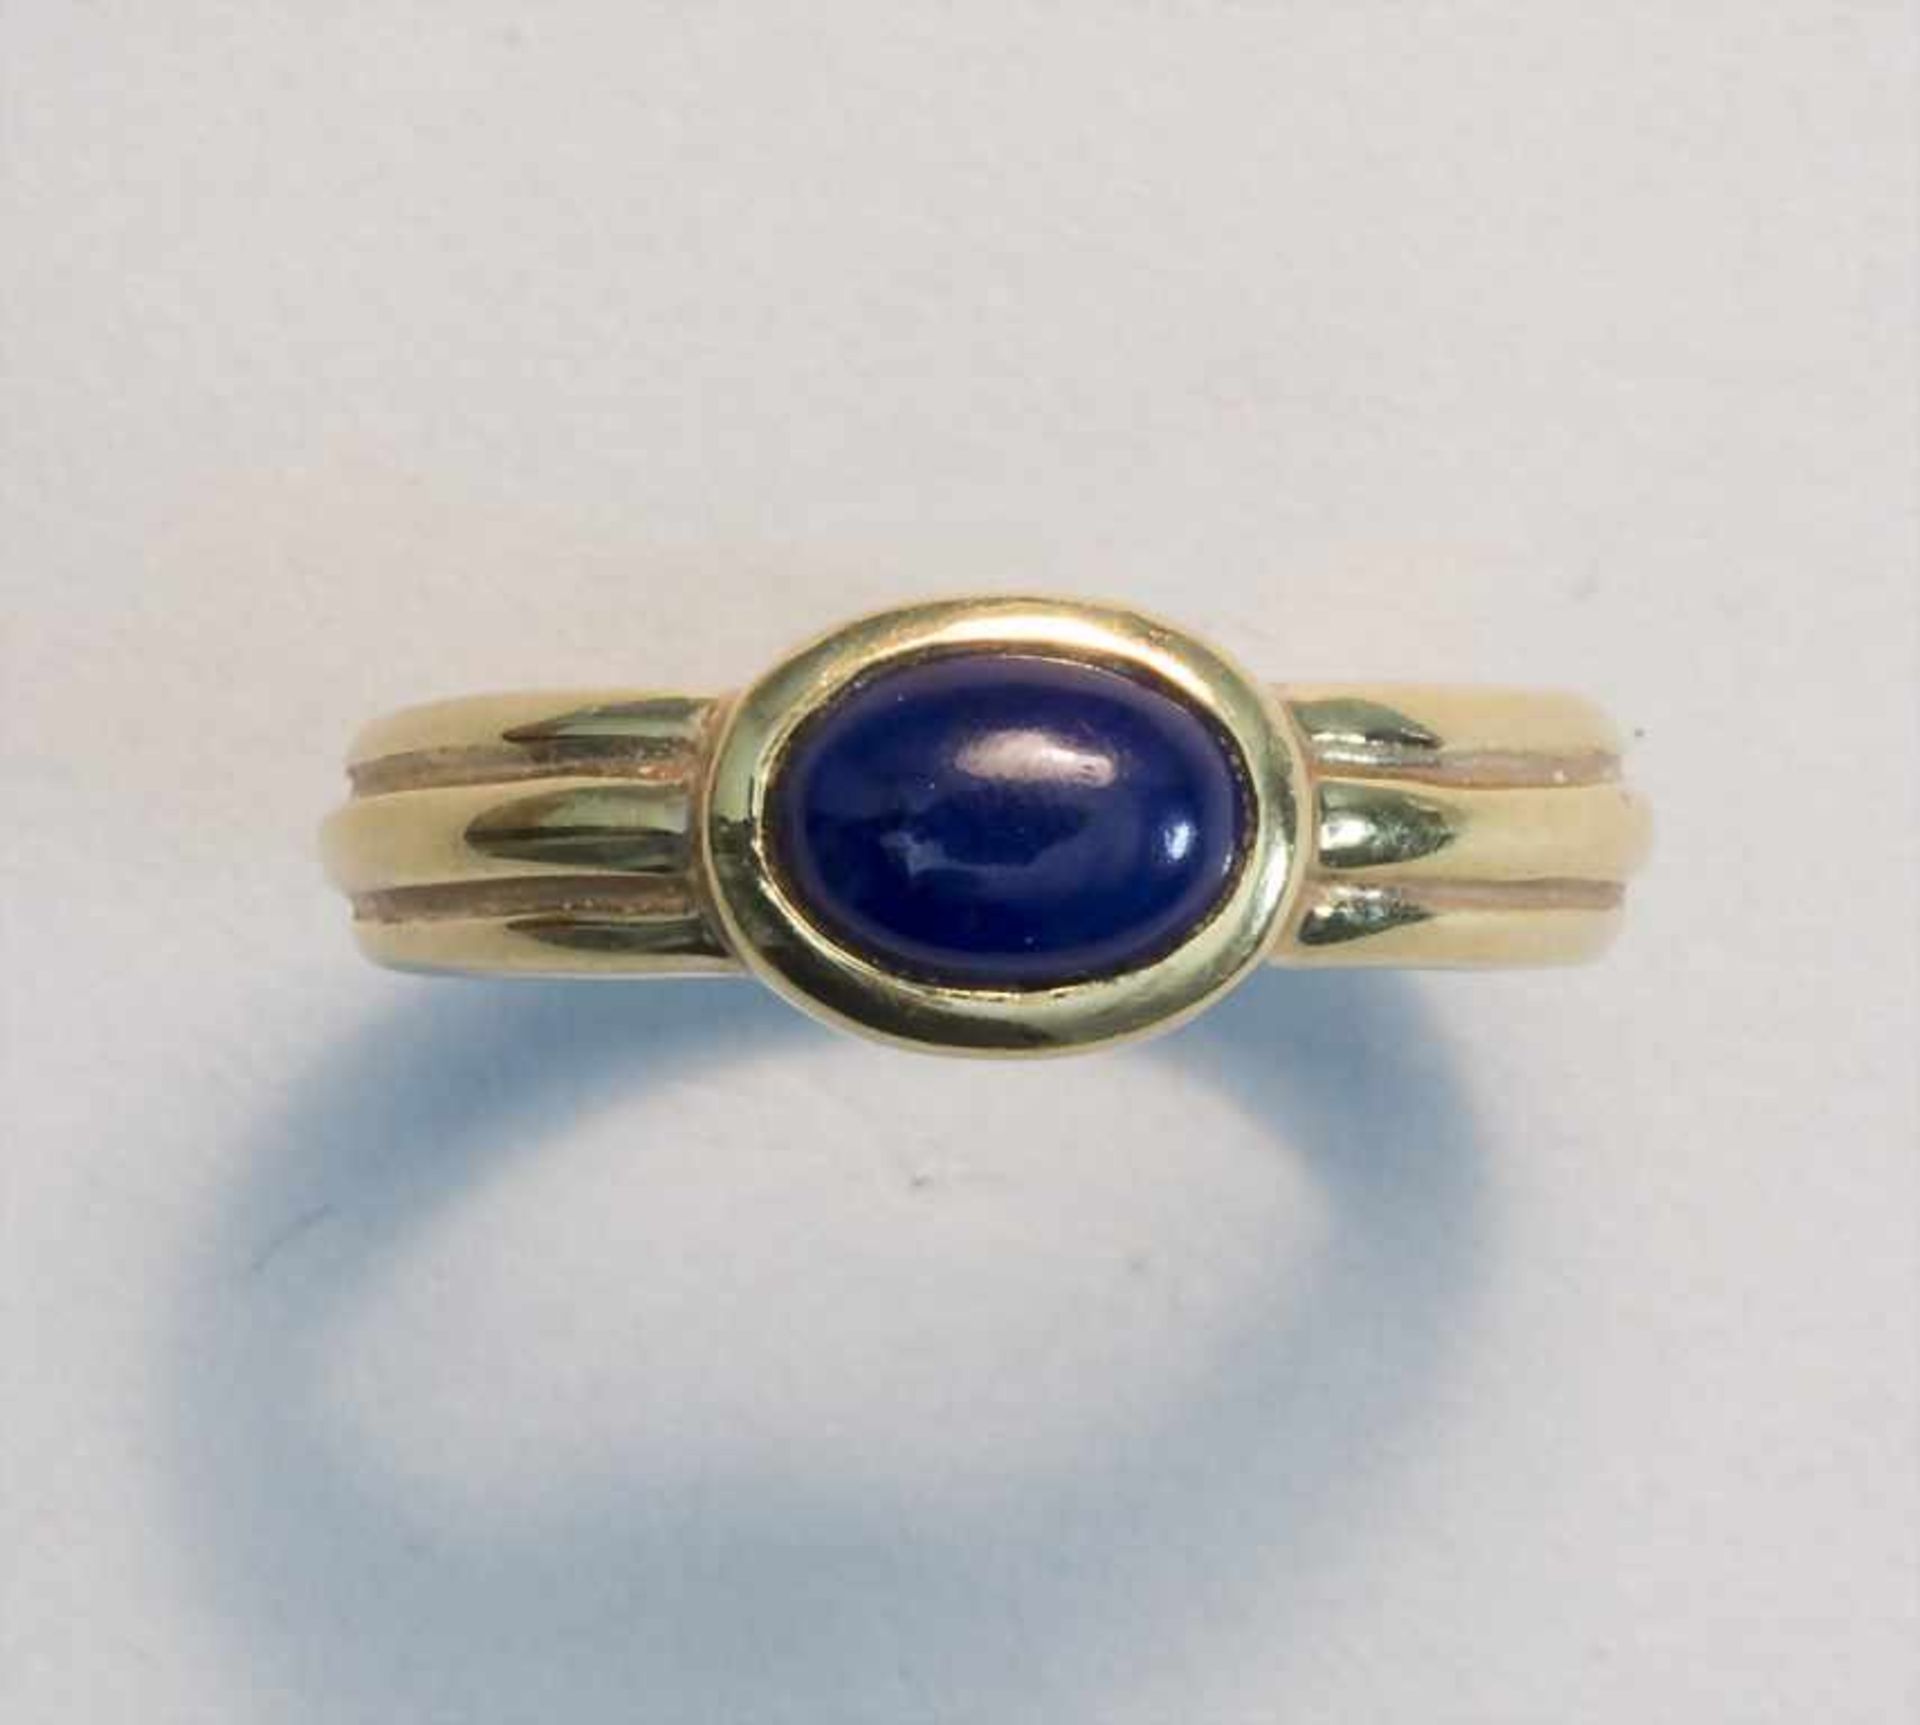 Damenring mit Lapislazuli / A ladies ring with lapis lazuli - Image 2 of 4